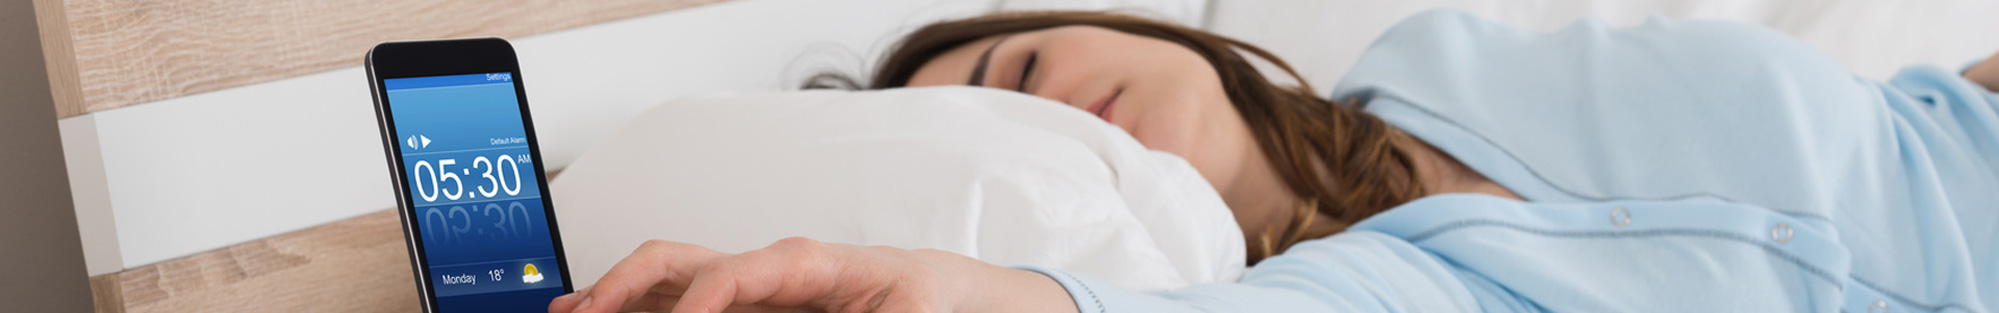 ייעוץ ואבחון הפרעות שינה